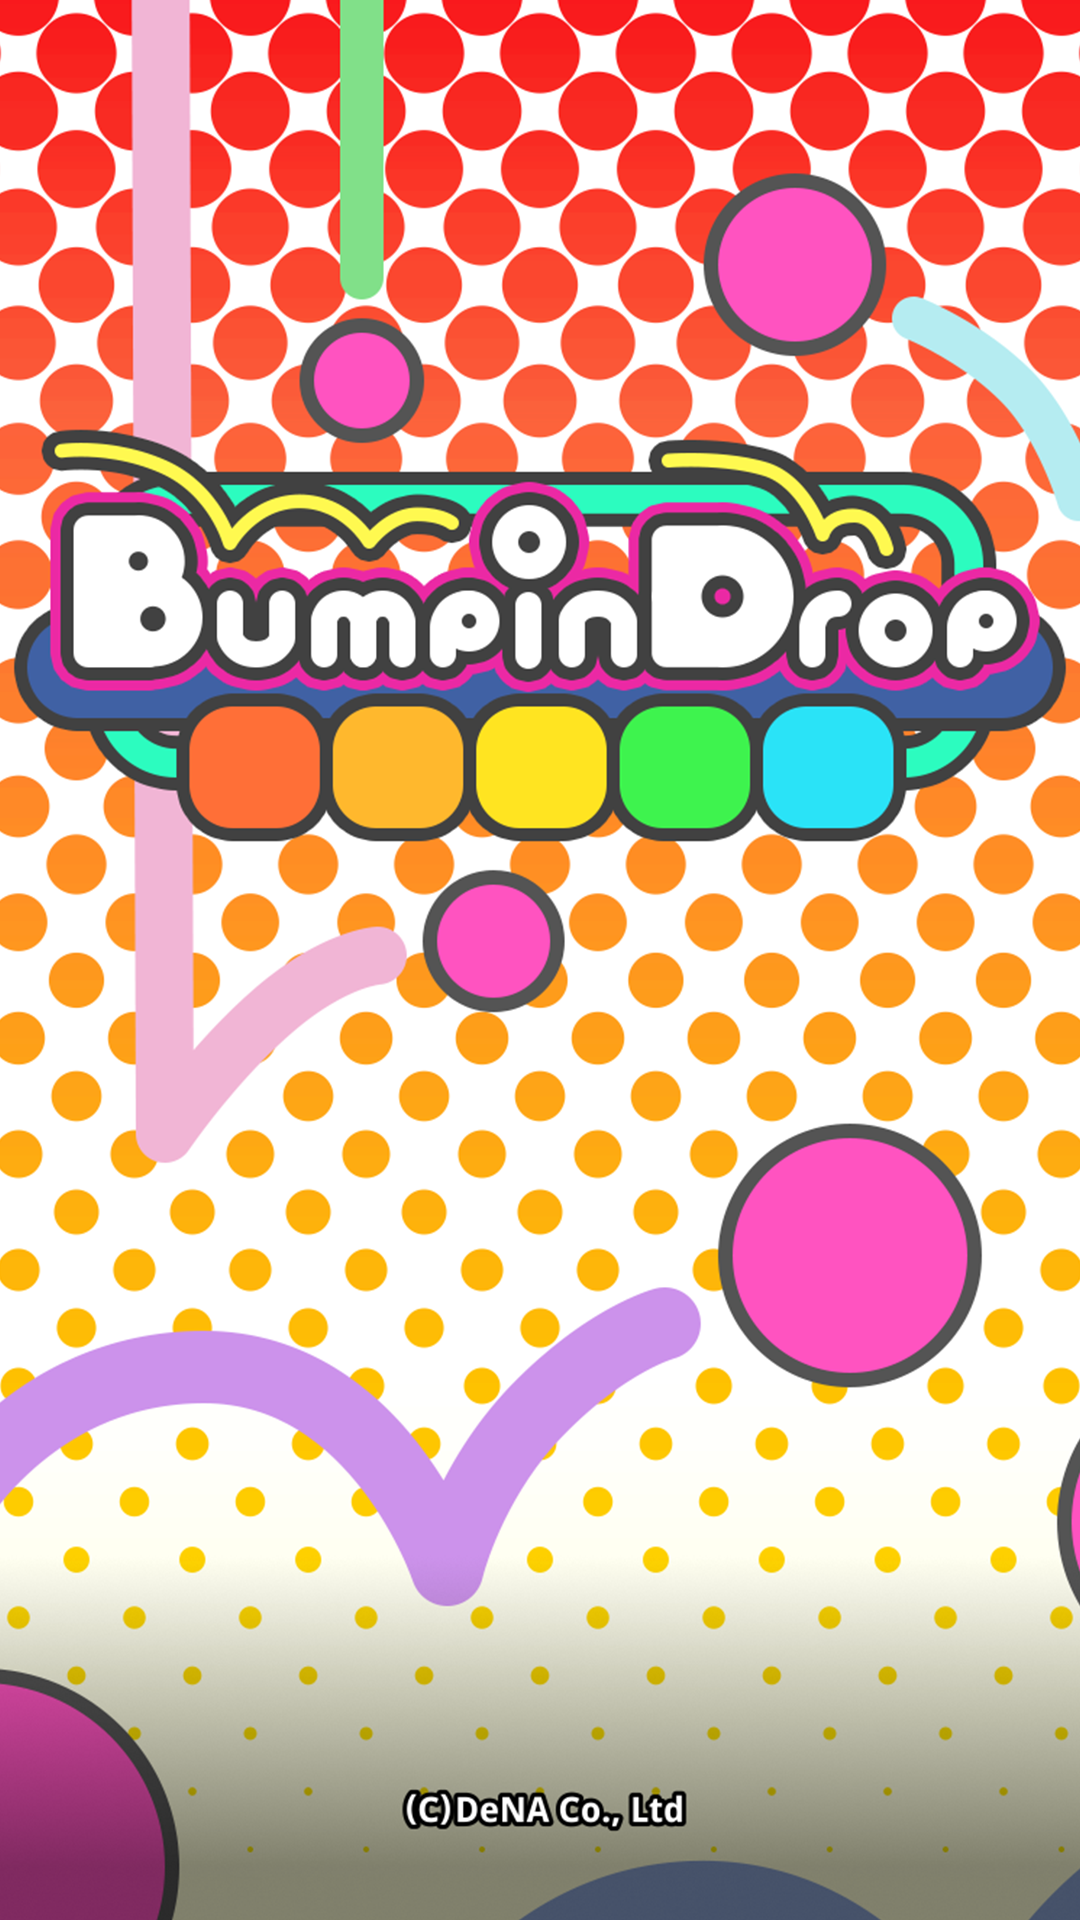 Screenshot of Bumpin Drop